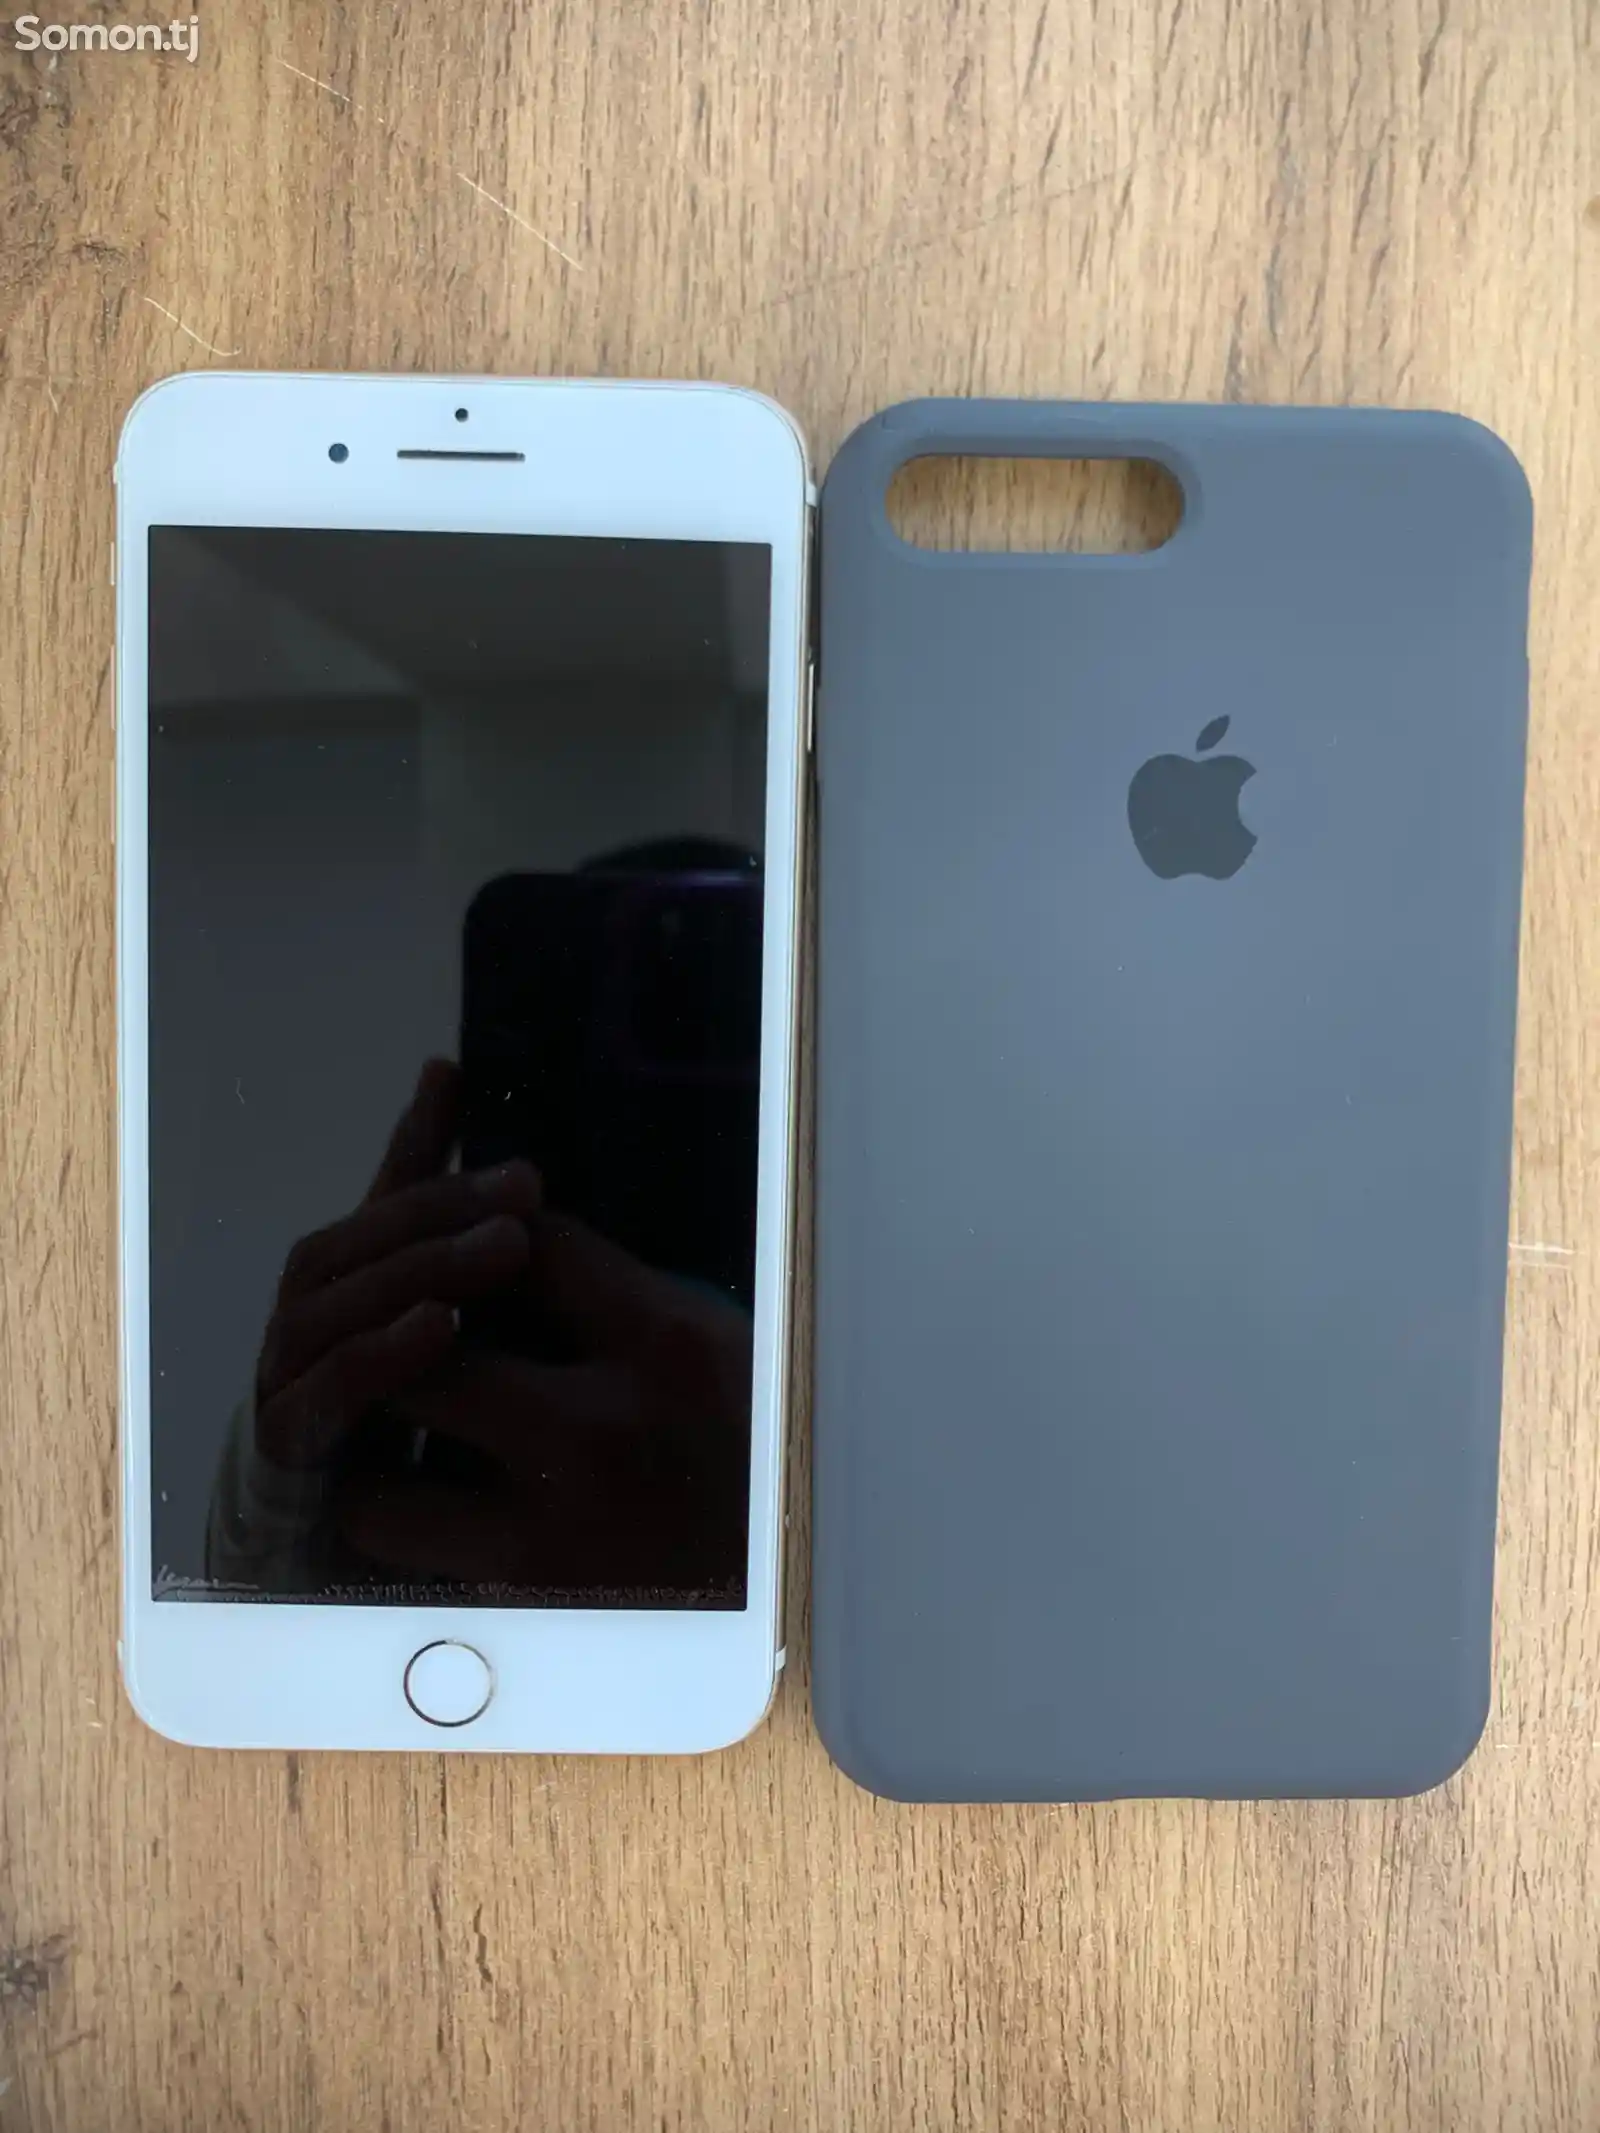 Apple iPhone 7 plus, 256 gb-1